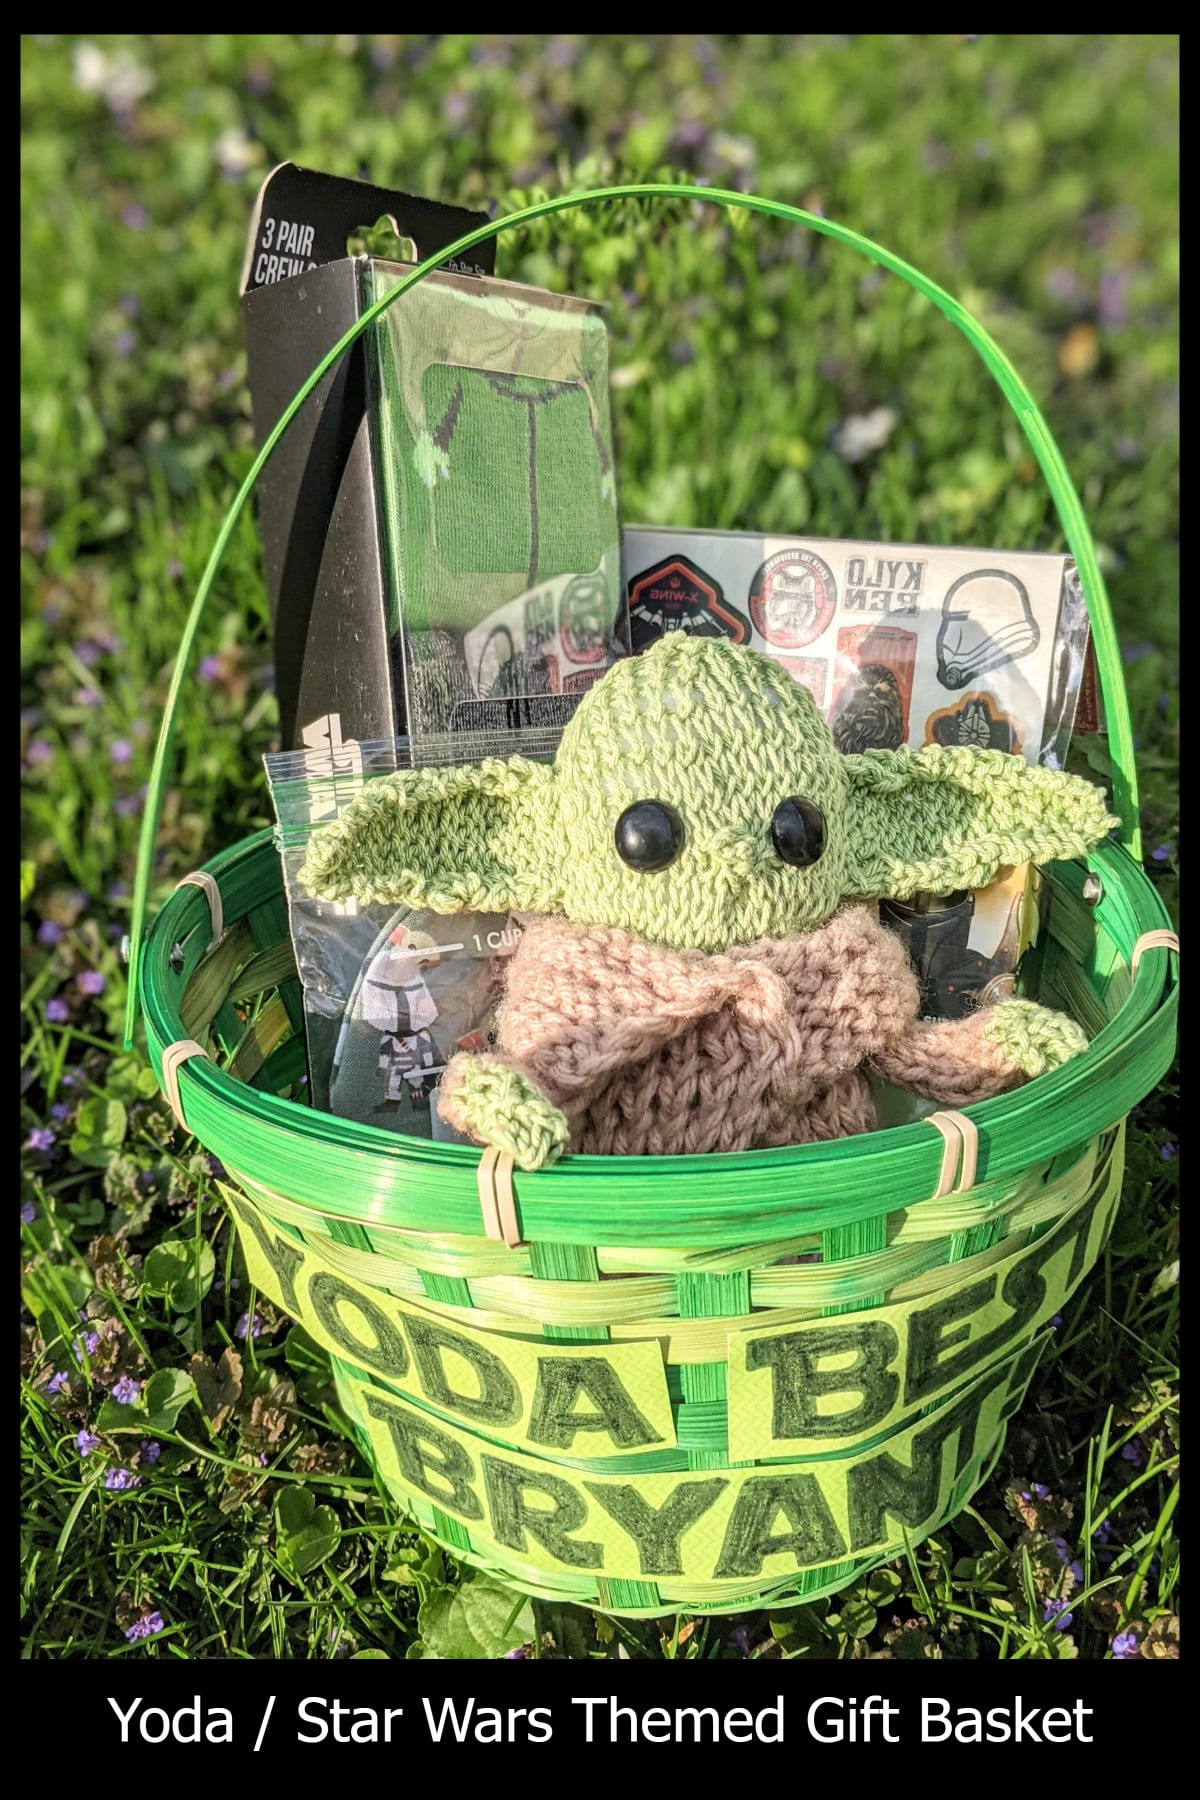 Homemade gift baskets - Yoda / Star Wars themed gift basket ideas